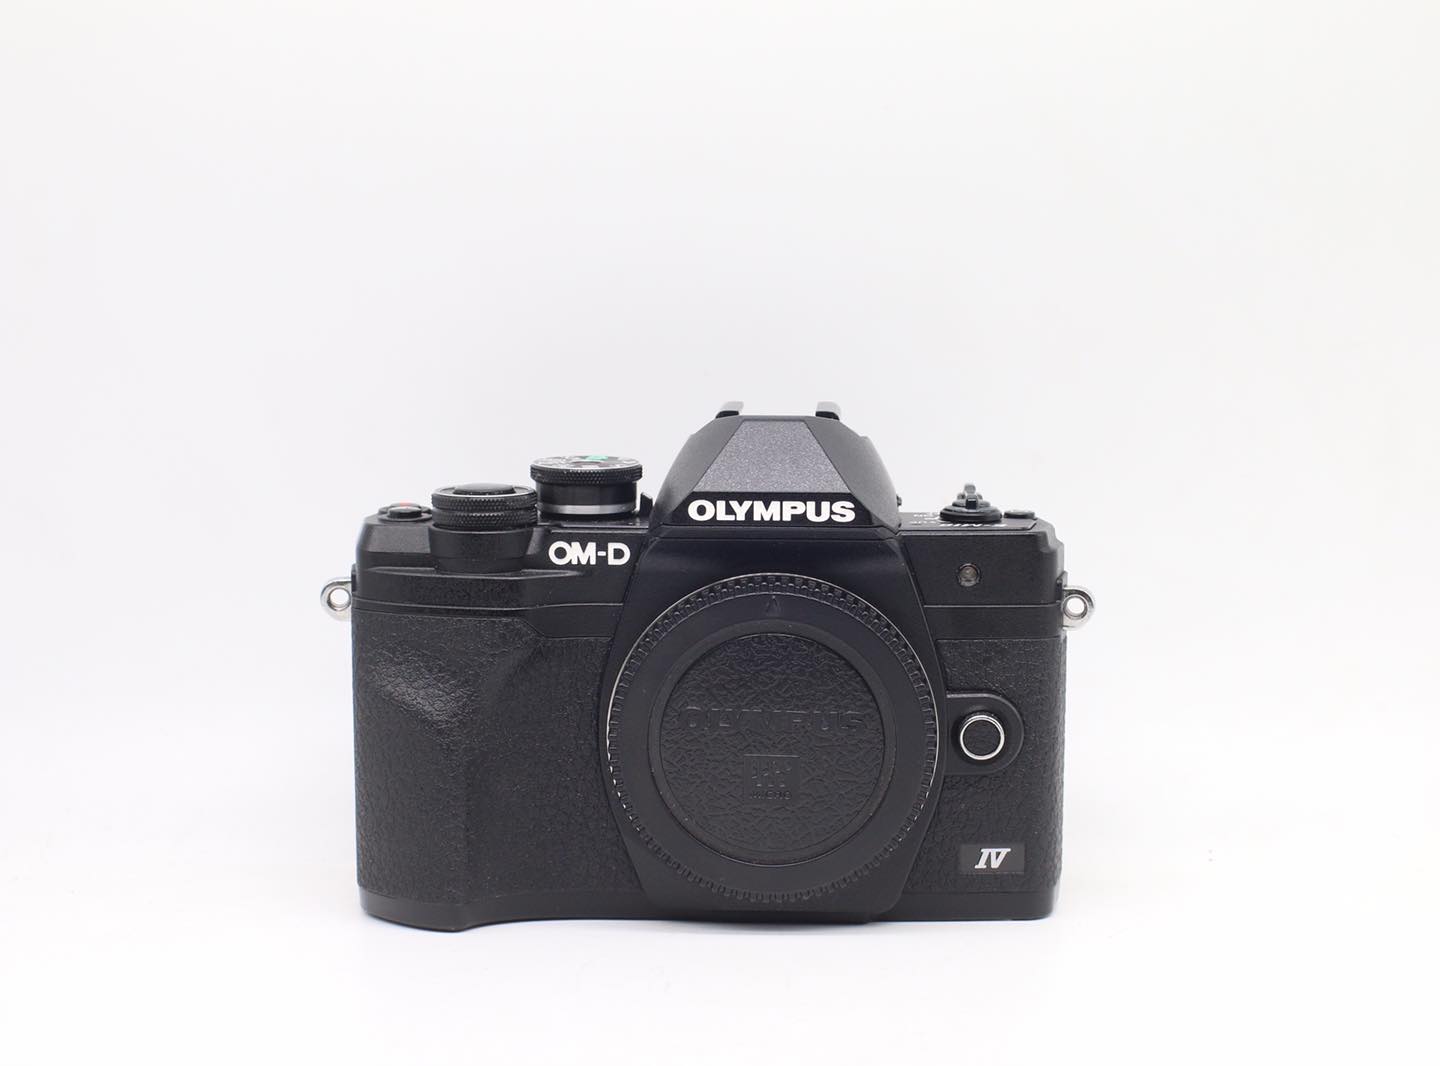 Những chiếc máy ảnh cũ giá rẻ là cơ hội để bạn tiết kiệm chi phí mà vẫn sở hữu một thiết bị chụp ảnh đẳng cấp. Thật tuyệt vời khi bạn có thể bắt đầu thực hiện đam mê của mình với những sản phẩm chất lượng tuyệt vời như thế, hãy vào xem hình ảnh sản phẩm liên quan ngay!